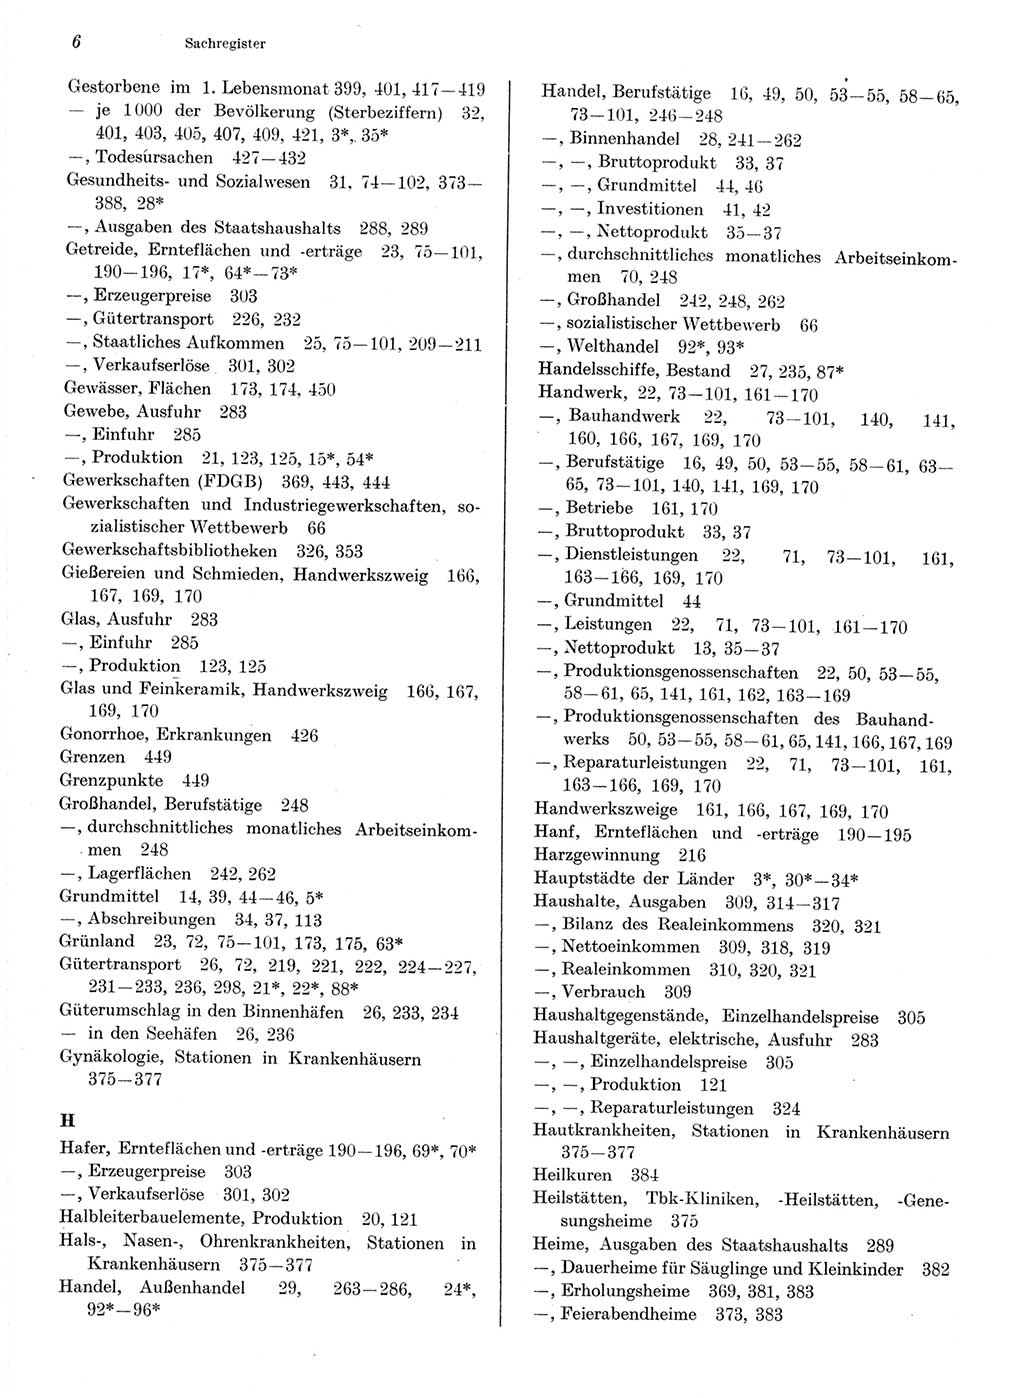 Statistisches Jahrbuch der Deutschen Demokratischen Republik (DDR) 1976, Seite 6 (Stat. Jb. DDR 1976, S. 6)